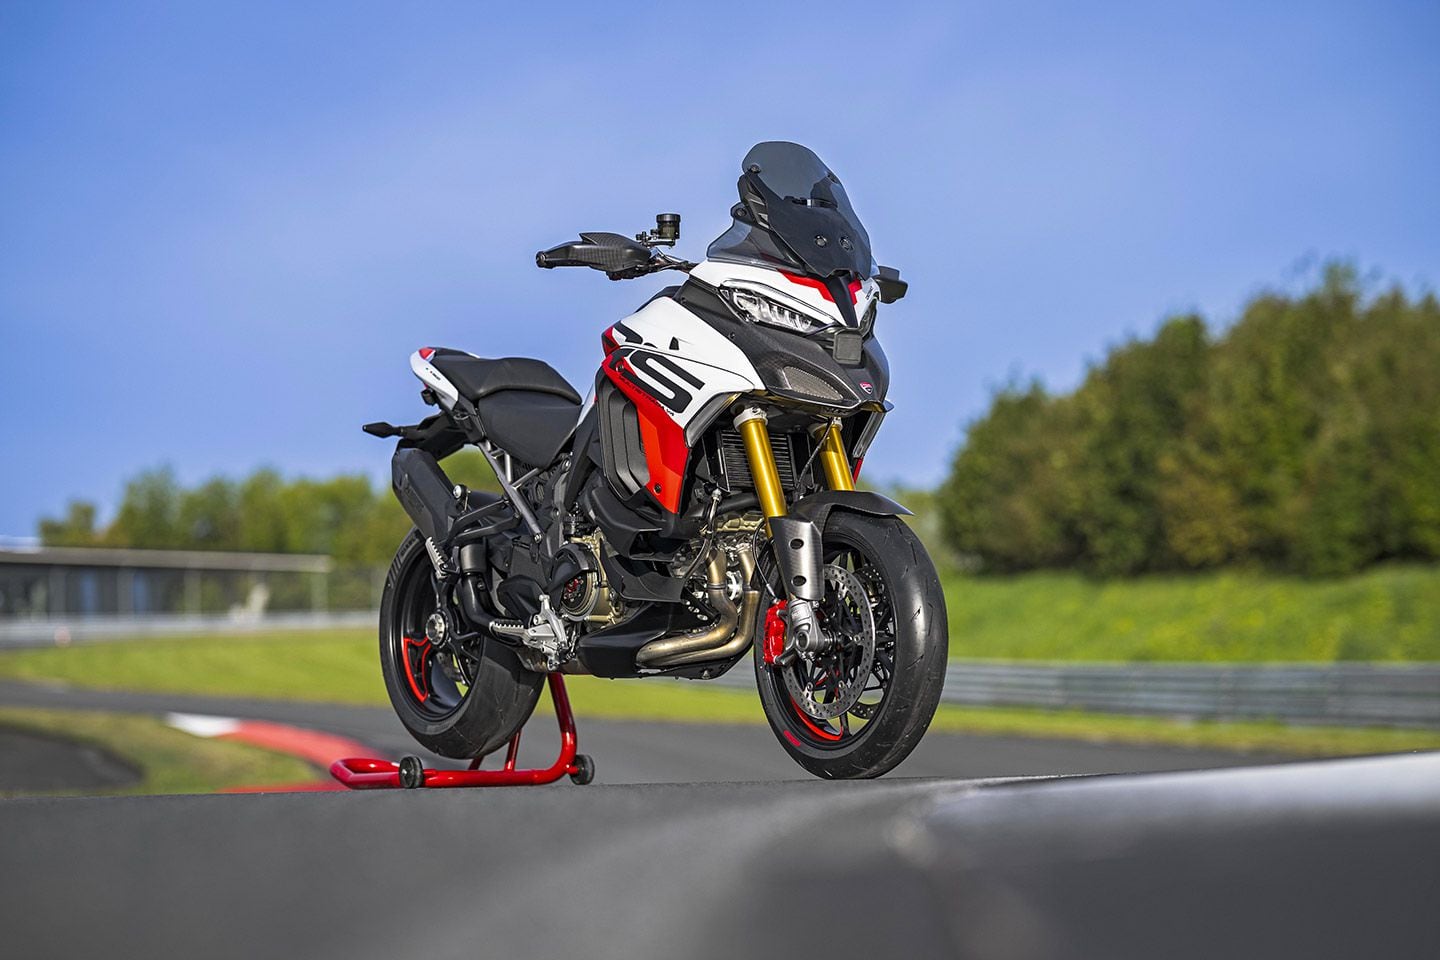 La Multistrada V4 RS de Ducati est équipée de roues de 17 pouces et d'un moteur Desmosedici Stradale pour des performances sportives sérieuses.